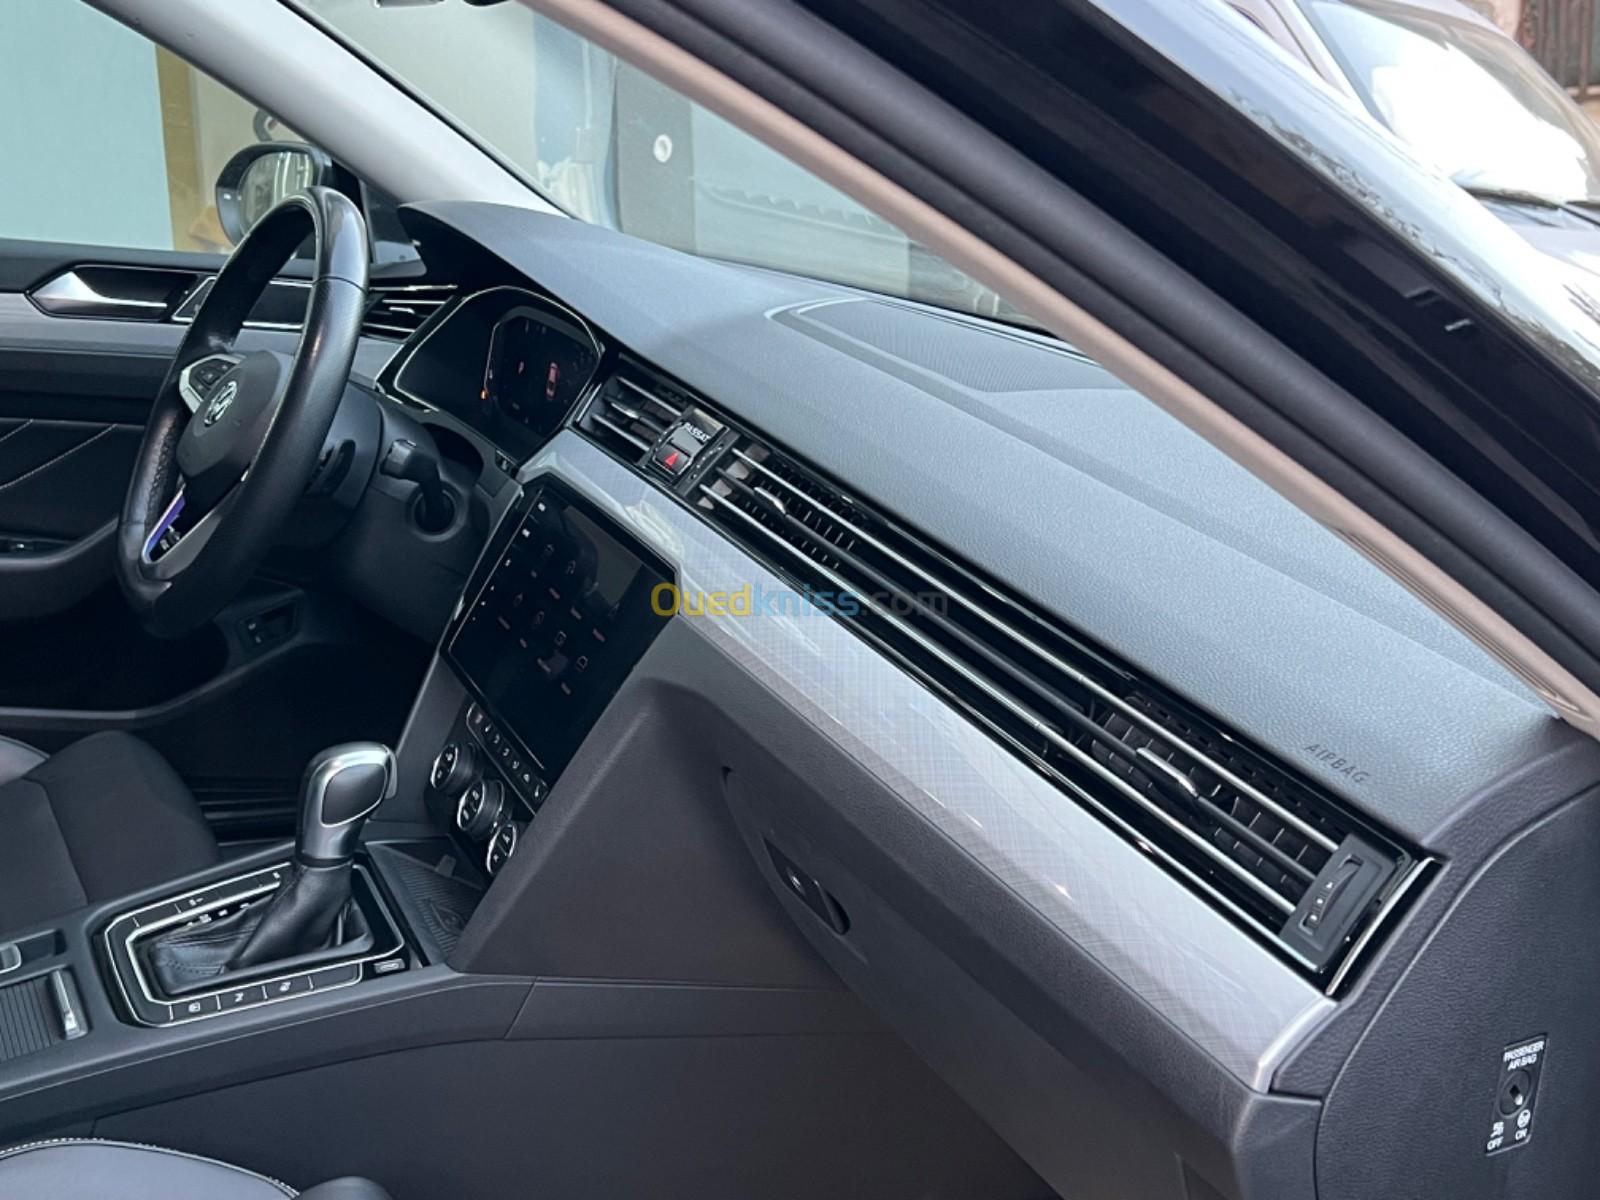 Volkswagen Passat 2020 GTE